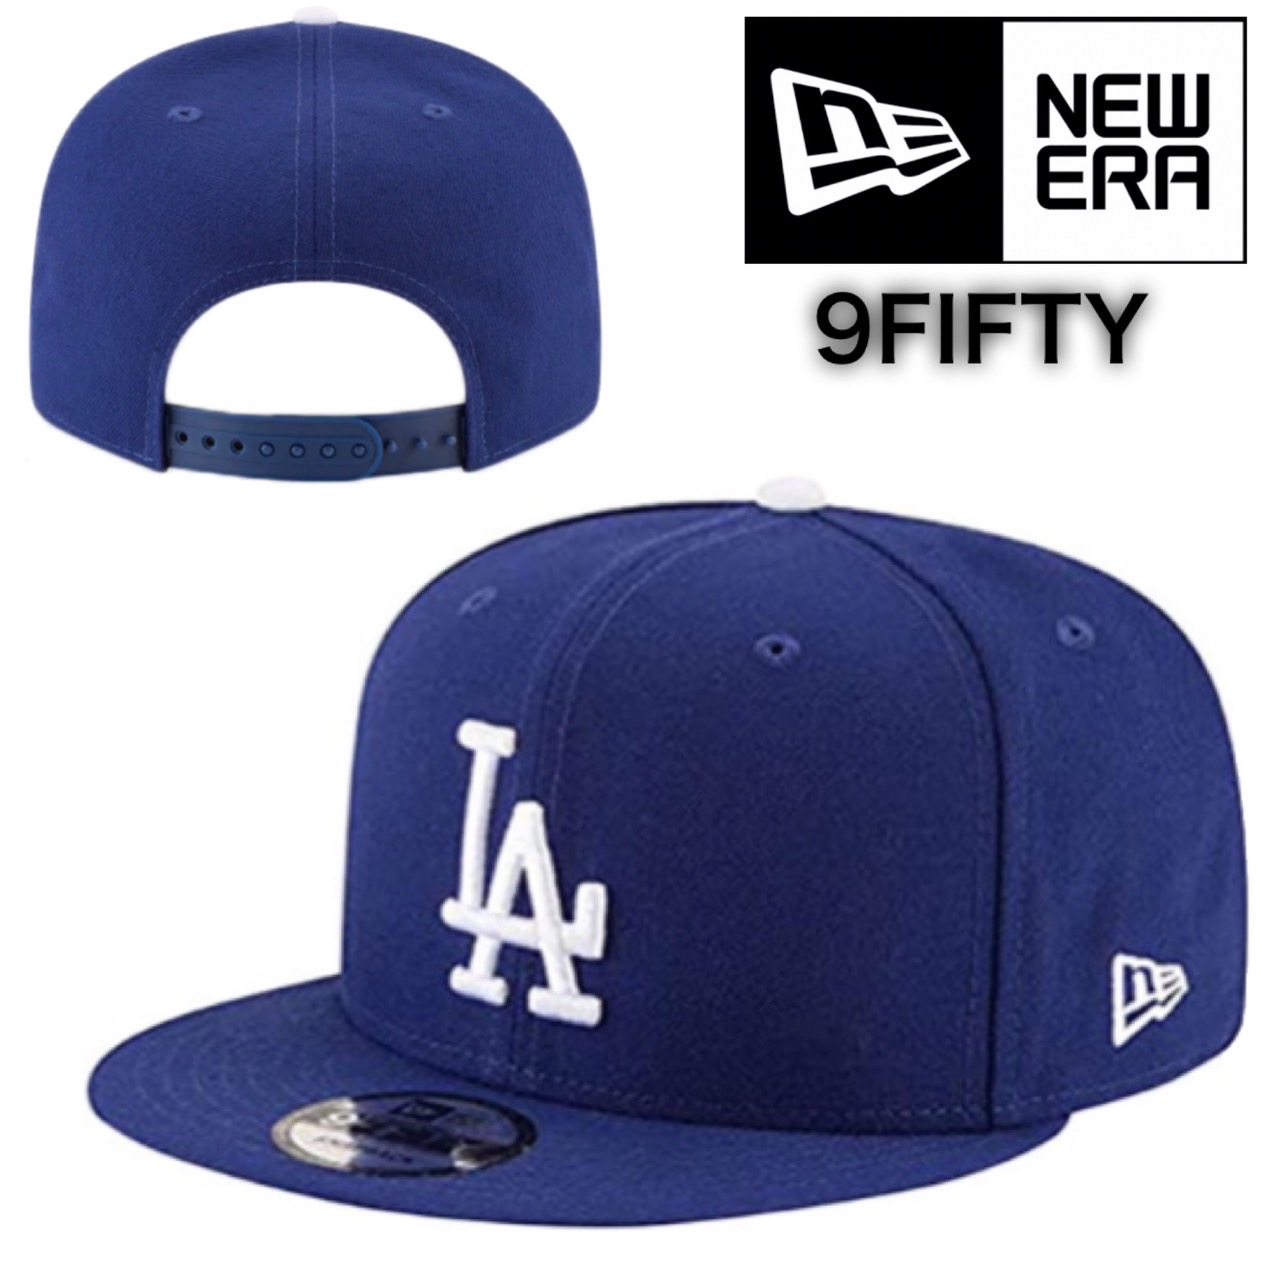 ニューエラ NEWERA キャップ 帽子 9FIFTY 野球チーム ヤンキース 950 ワンサイズ フラットバイザー スナップバック 野球  メジャーリーグ NEWERA 9FIFTY CAP